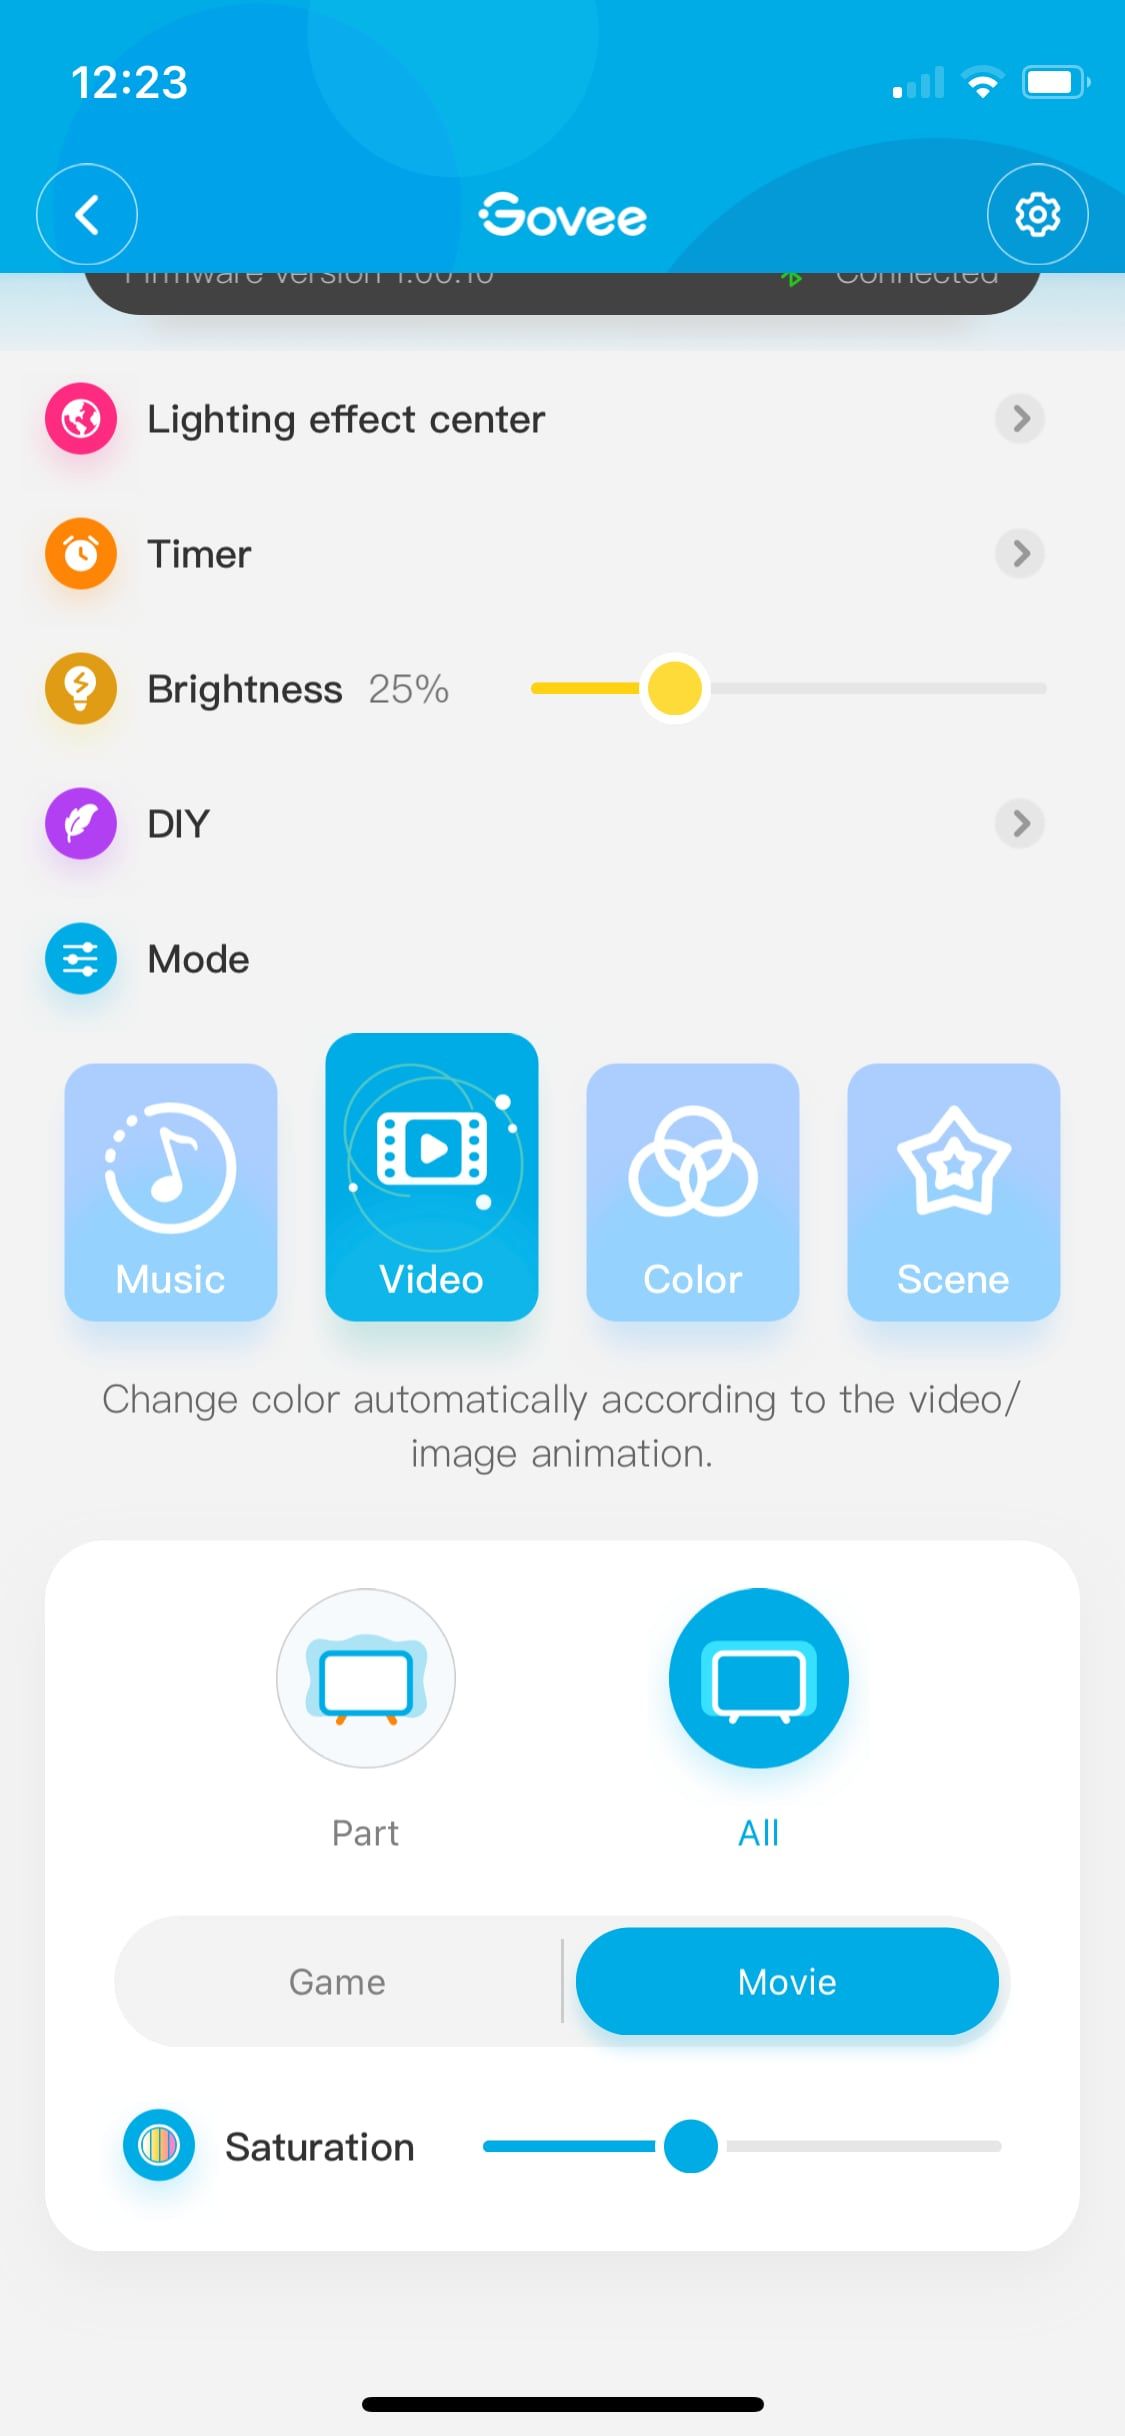 Govee app in video mode